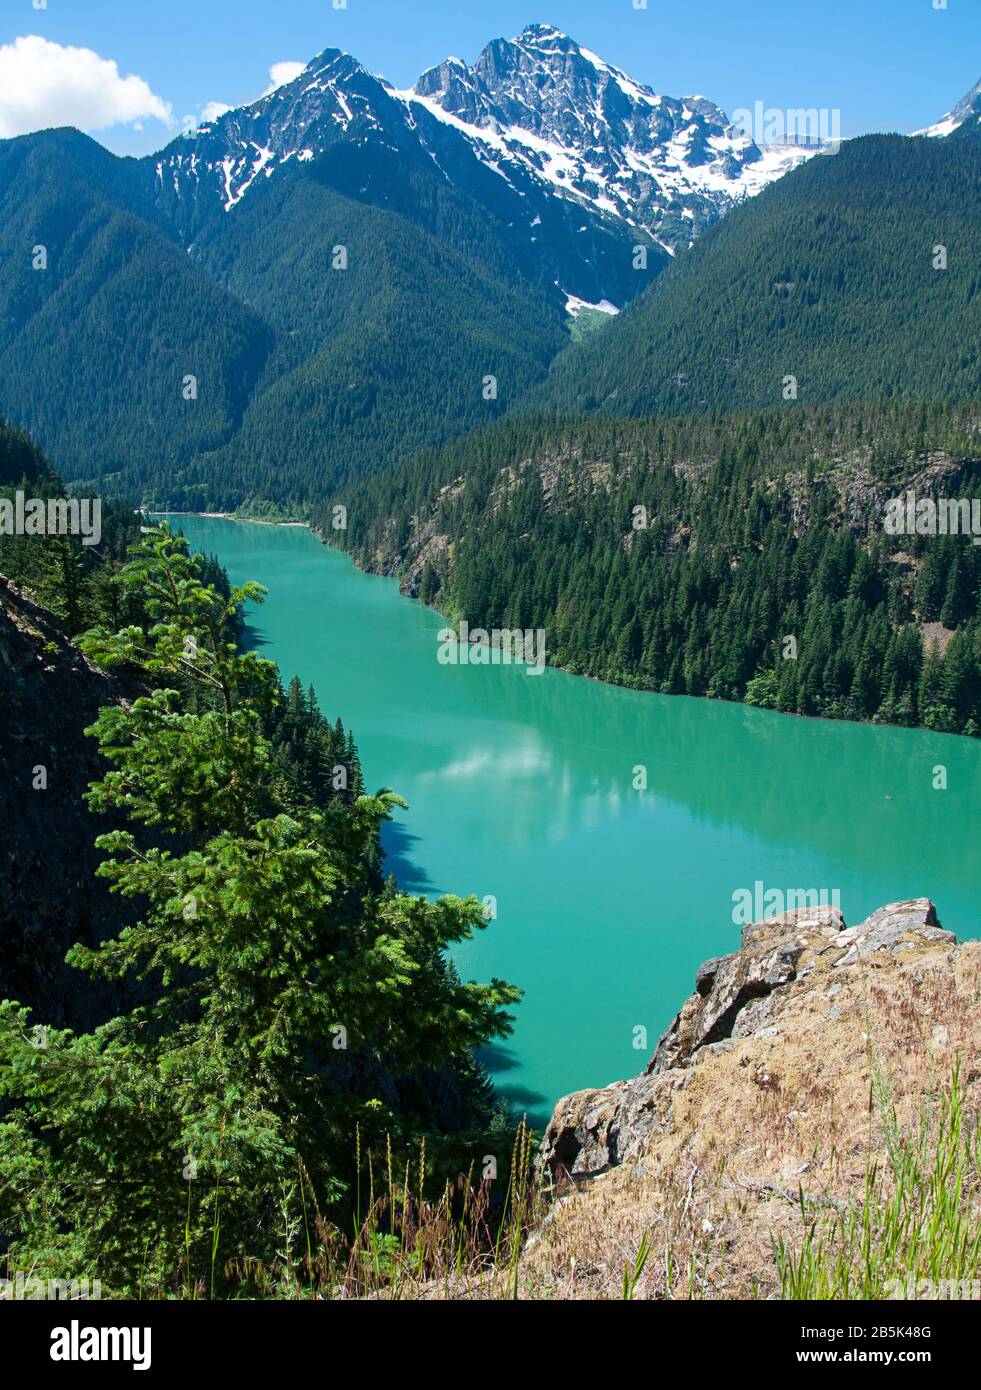 Paesaggio di Ross Lake Washington, la natura mozzafiato di questo lago del Pacifico nord-occidentale con acque verdi profonde e montagne coperte di neve. Foto Stock